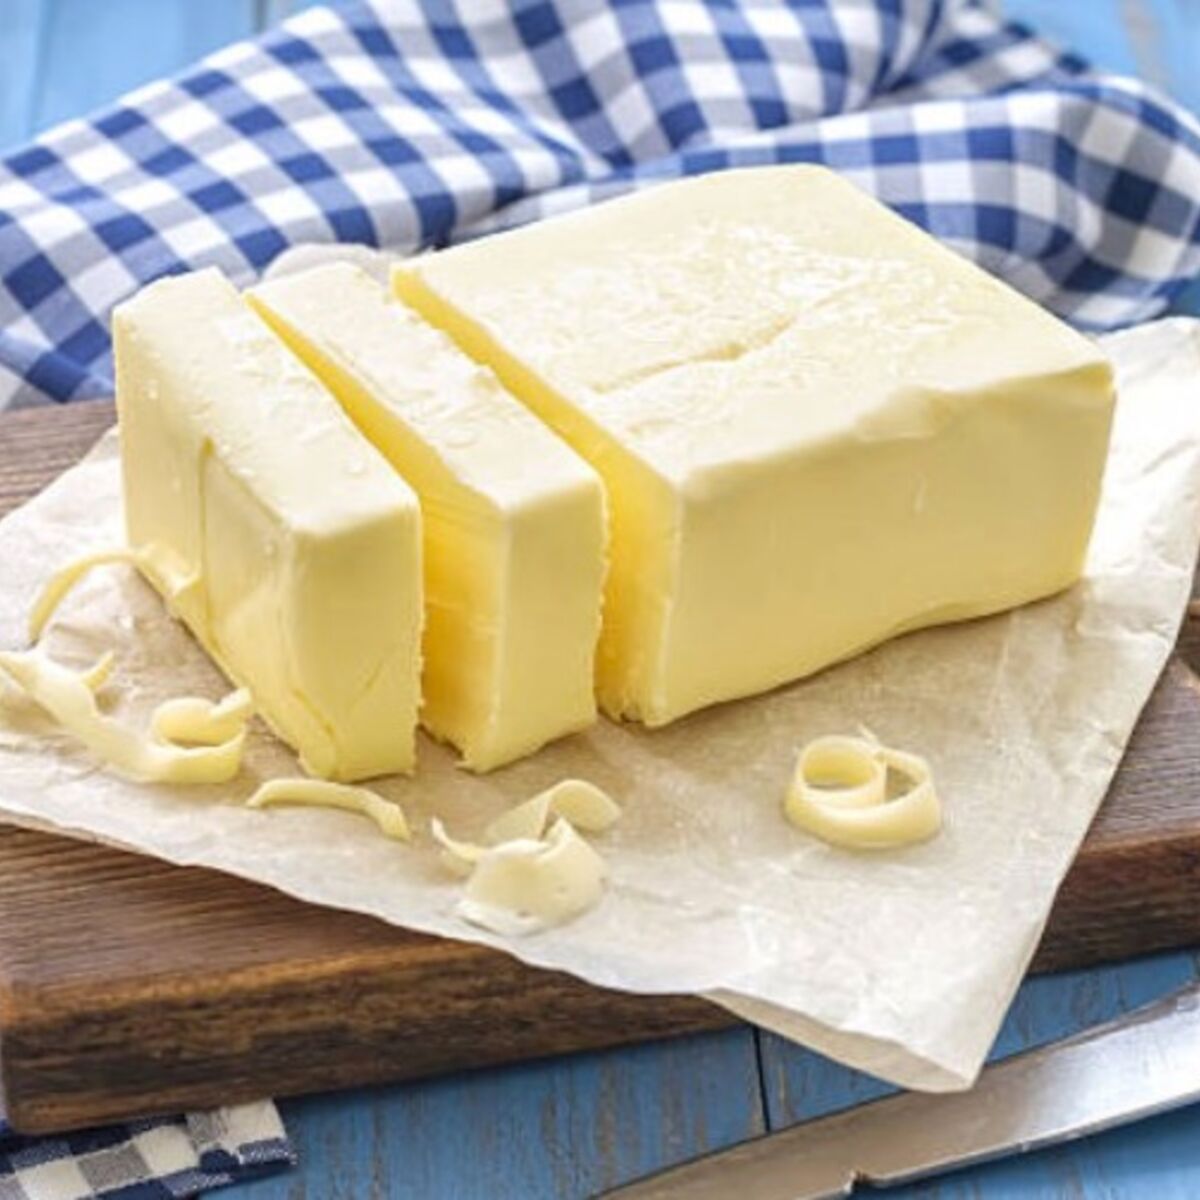 le garder frais peut être coupé en petits morceaux et mis au réfrigérateur Bac à beurre coupé en petits morceaux 17 cm x 10 cm x 7 cm. conserver le beurre acier inoxydable